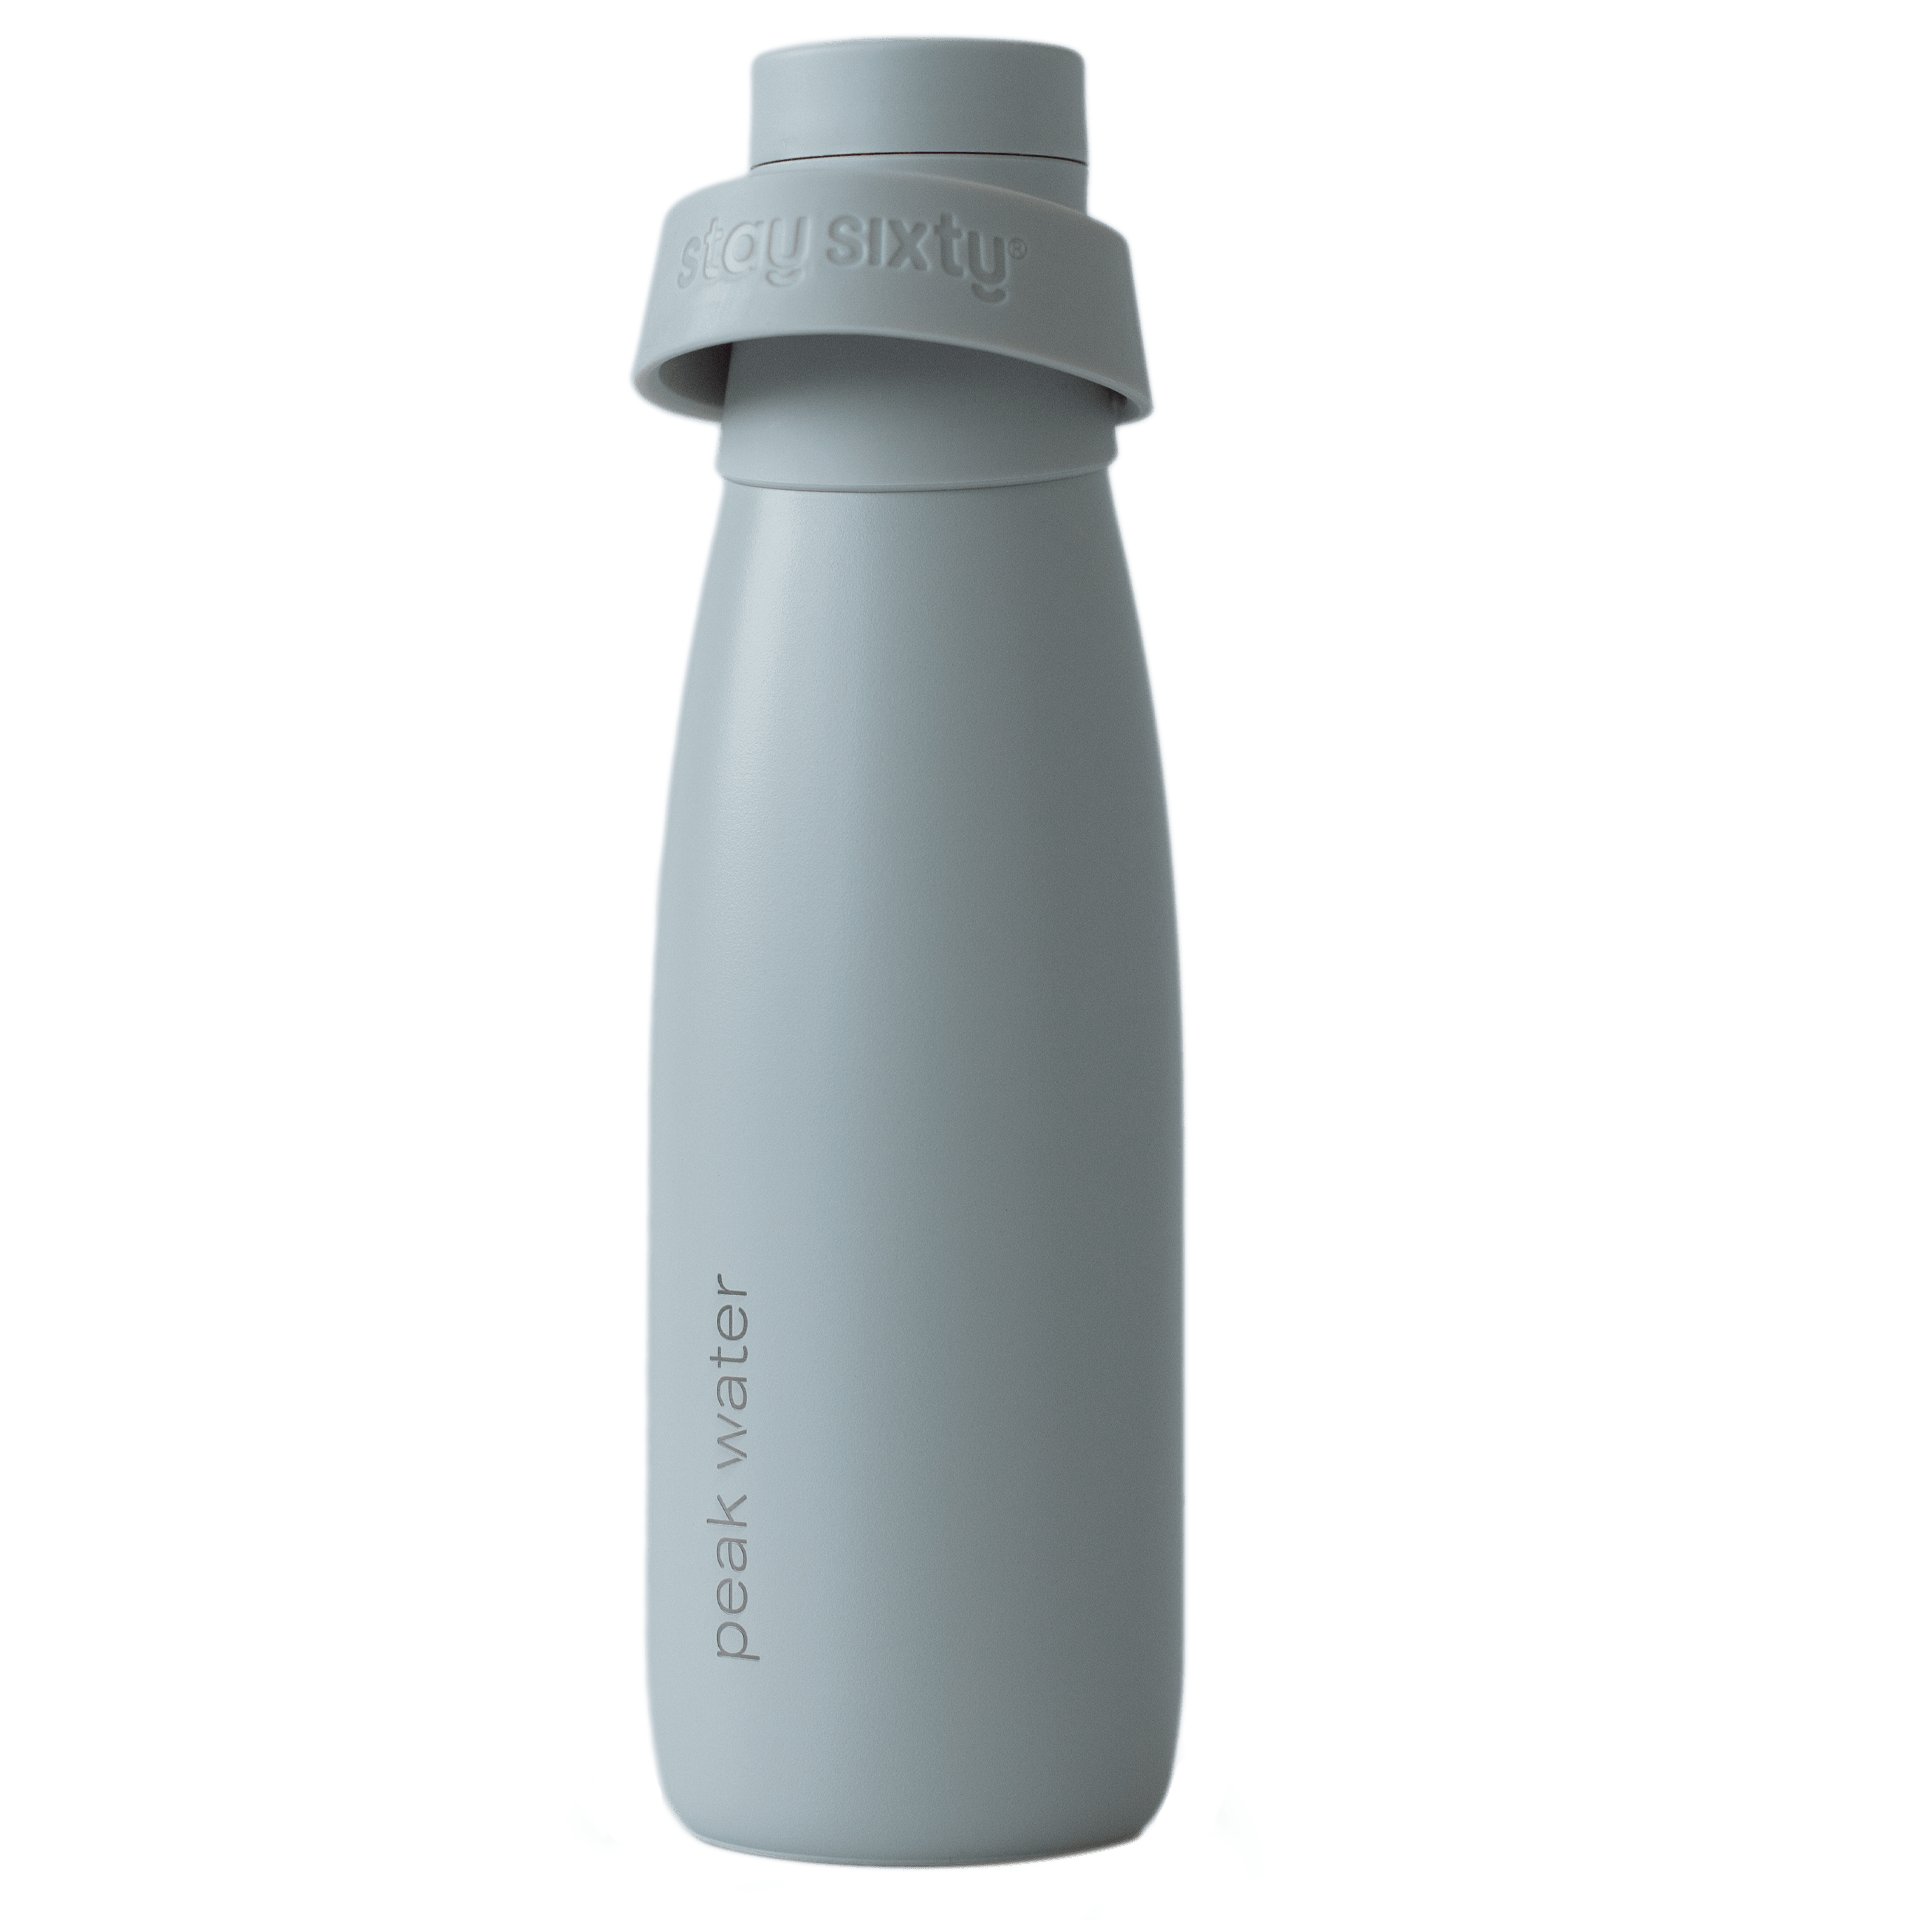 StaySixty x Peak Water Bottle